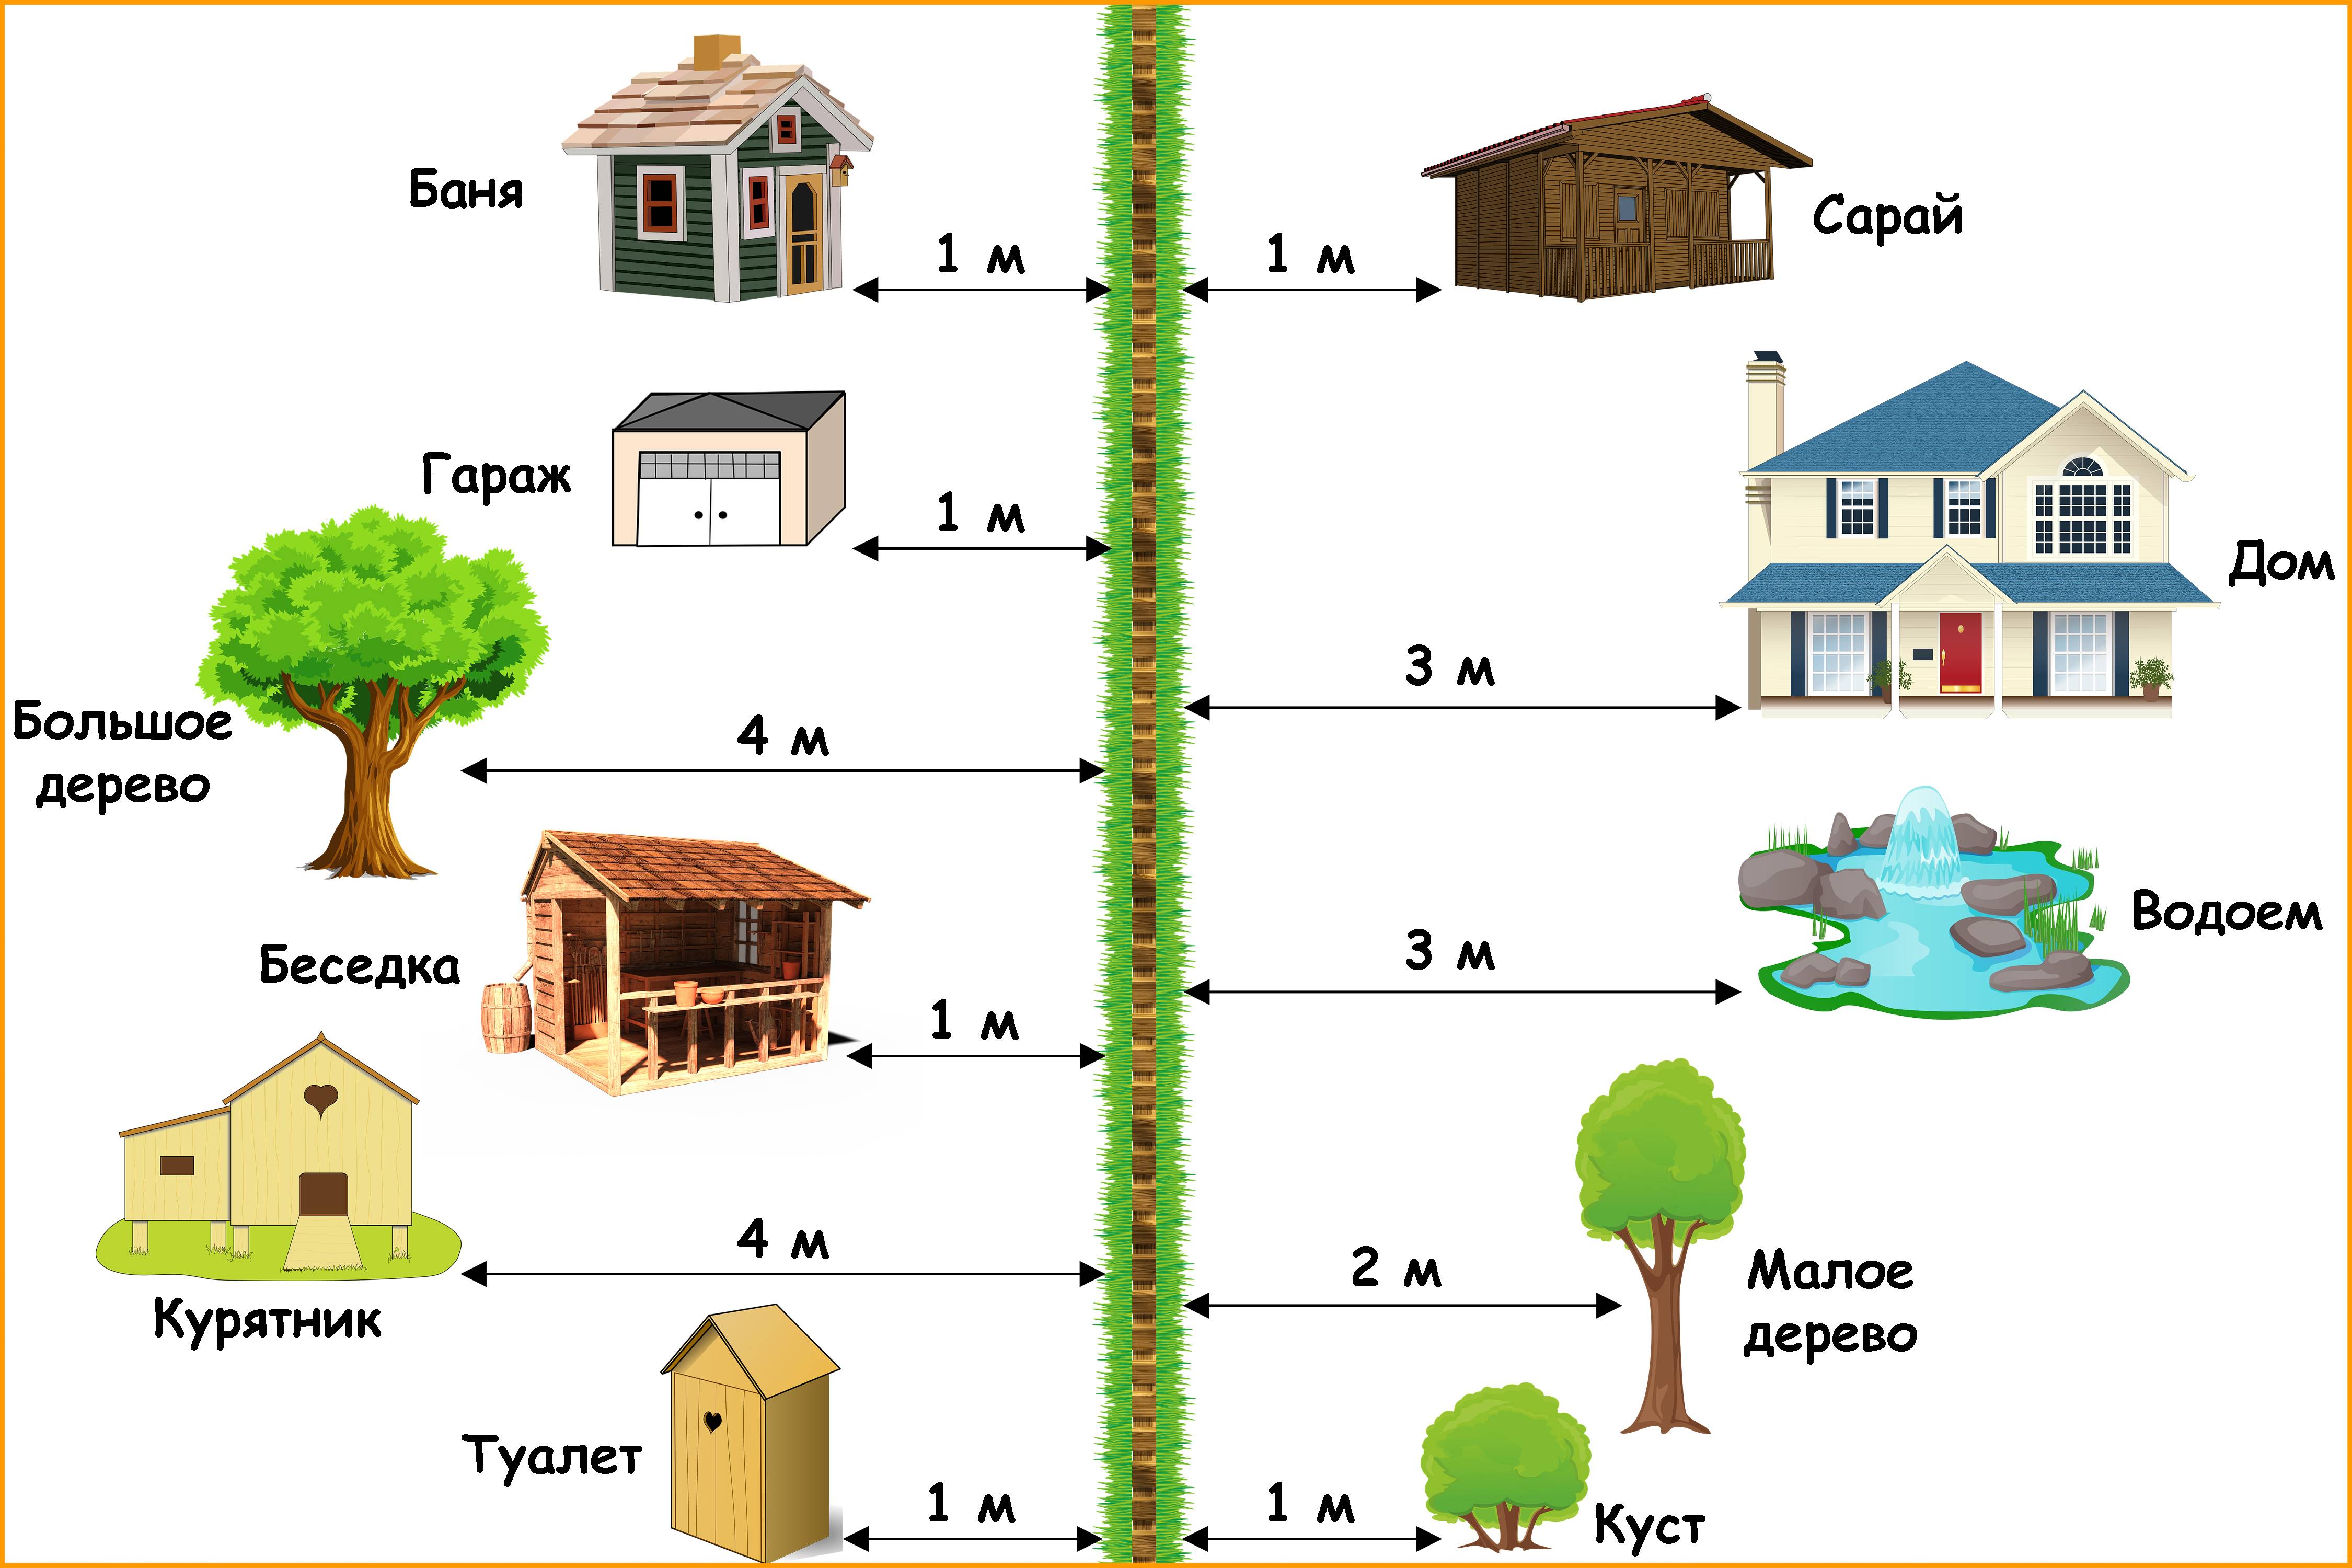 Правила строительства дома на участке ижс: в 2020, с соседом, размещение постройки, расстояние до забора, документы, уведомление, снип | ипотека и недвижимость